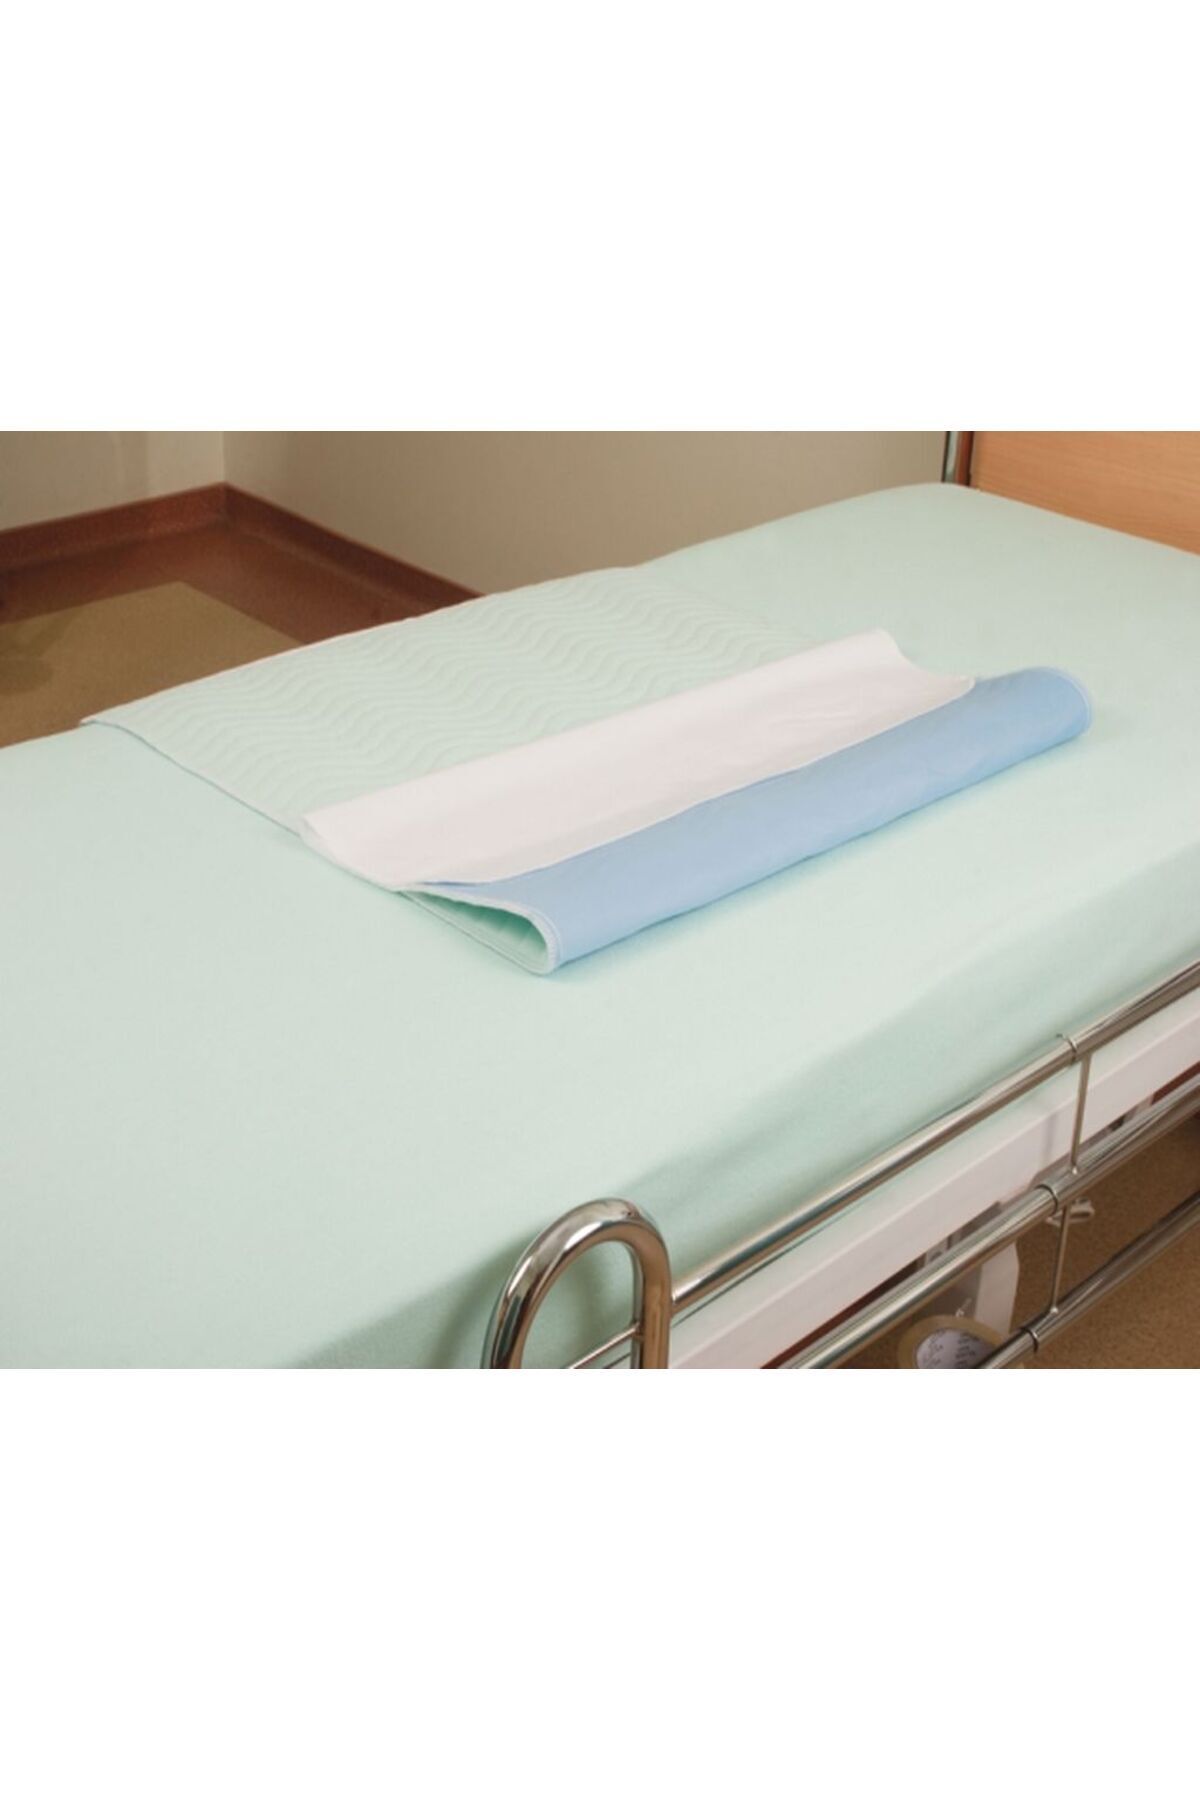 CDE Abso (2 Lİ EKONOMİK PAKET) Yıkanabilir,sıvı Geçirmez Hasta Altı Yatak Örtüsü (75X90 CM)